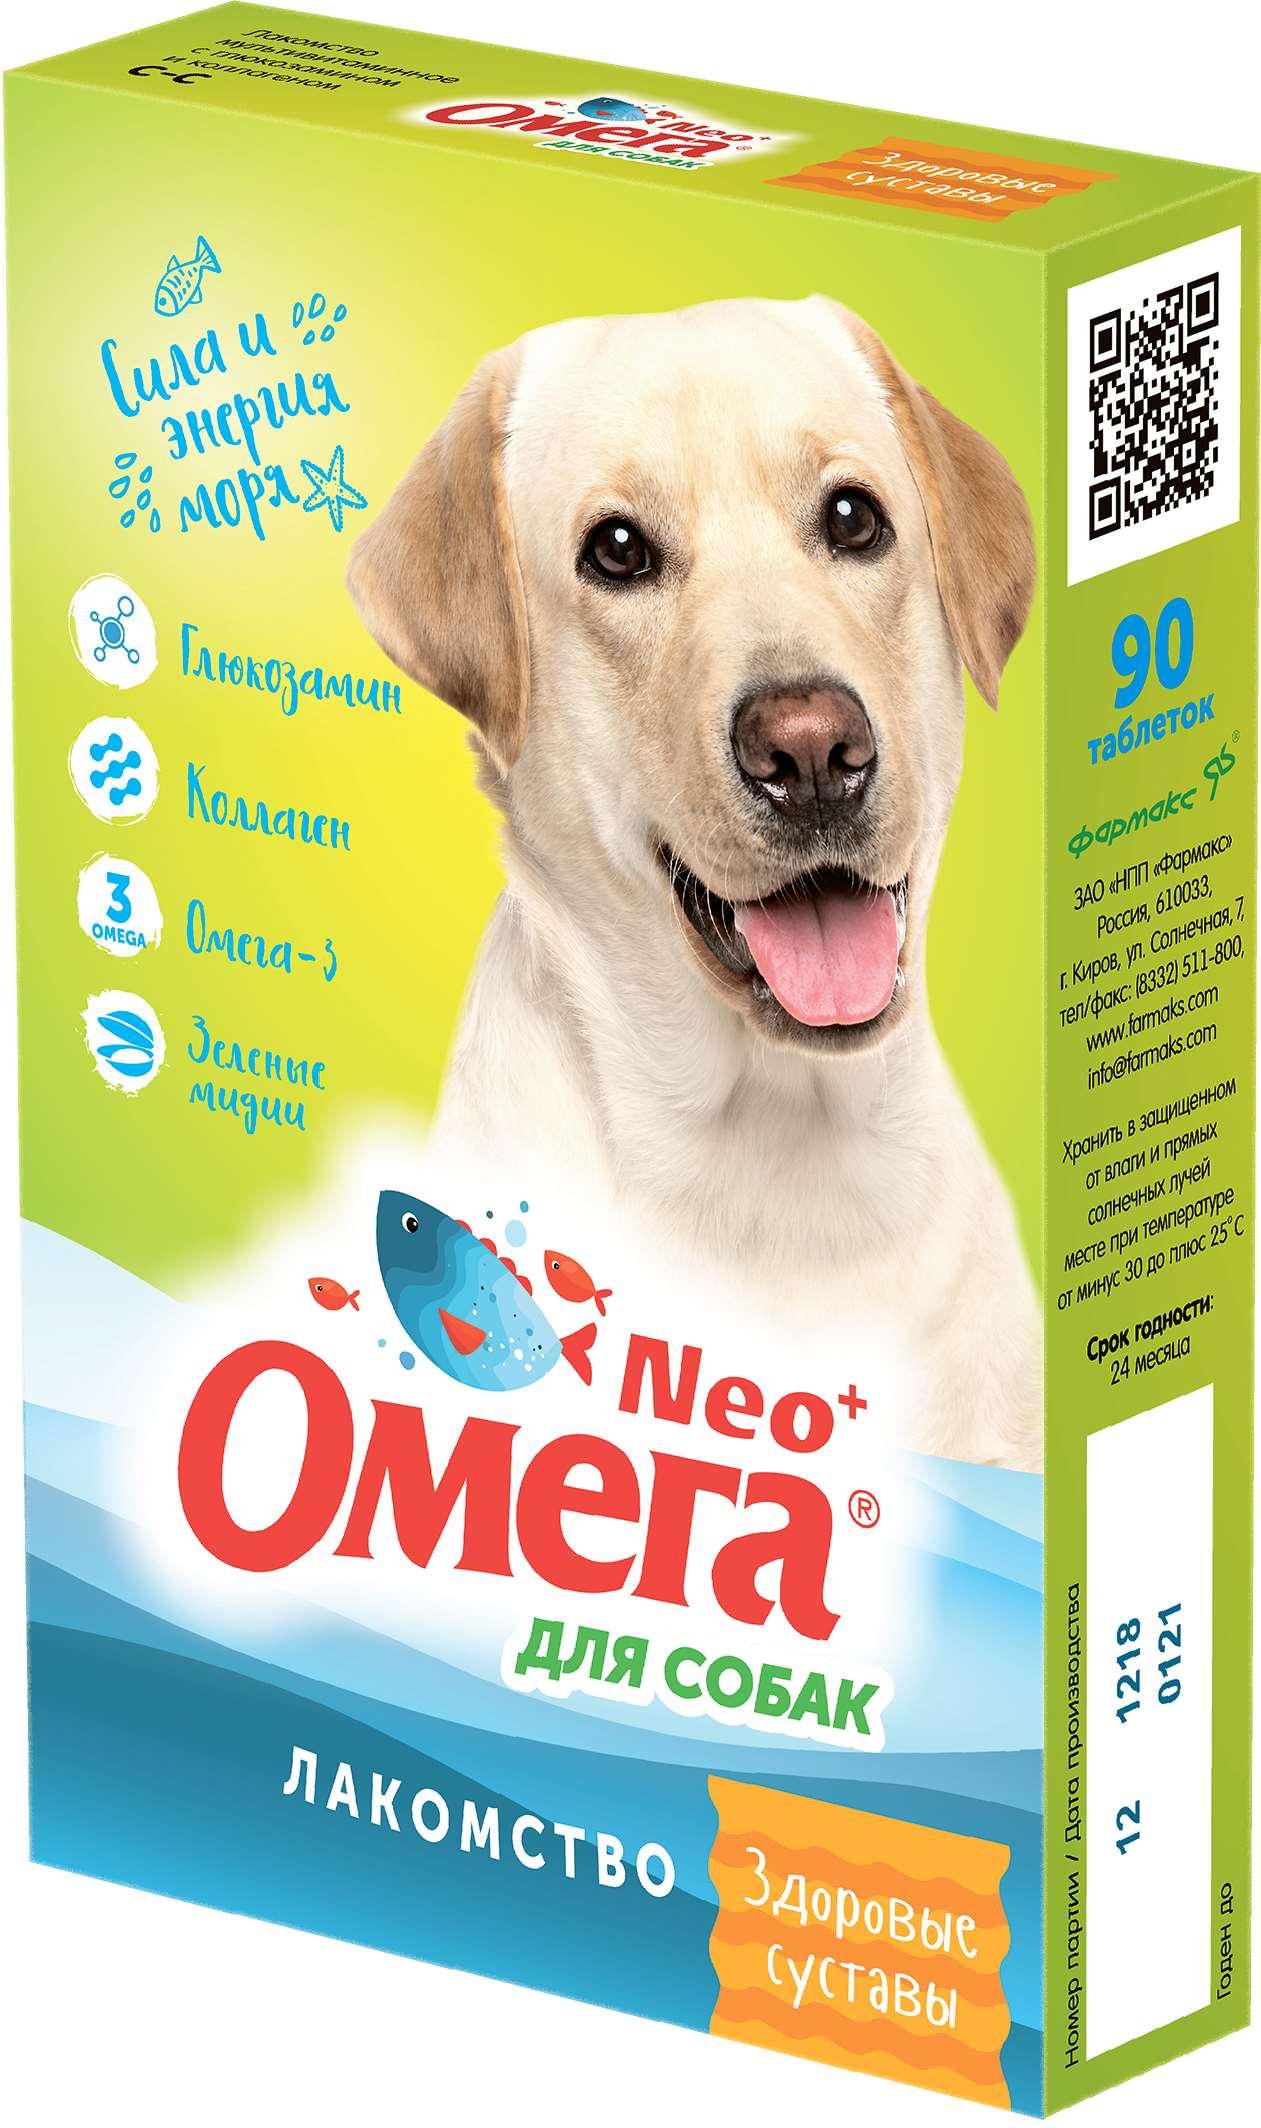 Витаминизированное лакомство для собак Омега NEO+ Здоровые суставы, 90 табл